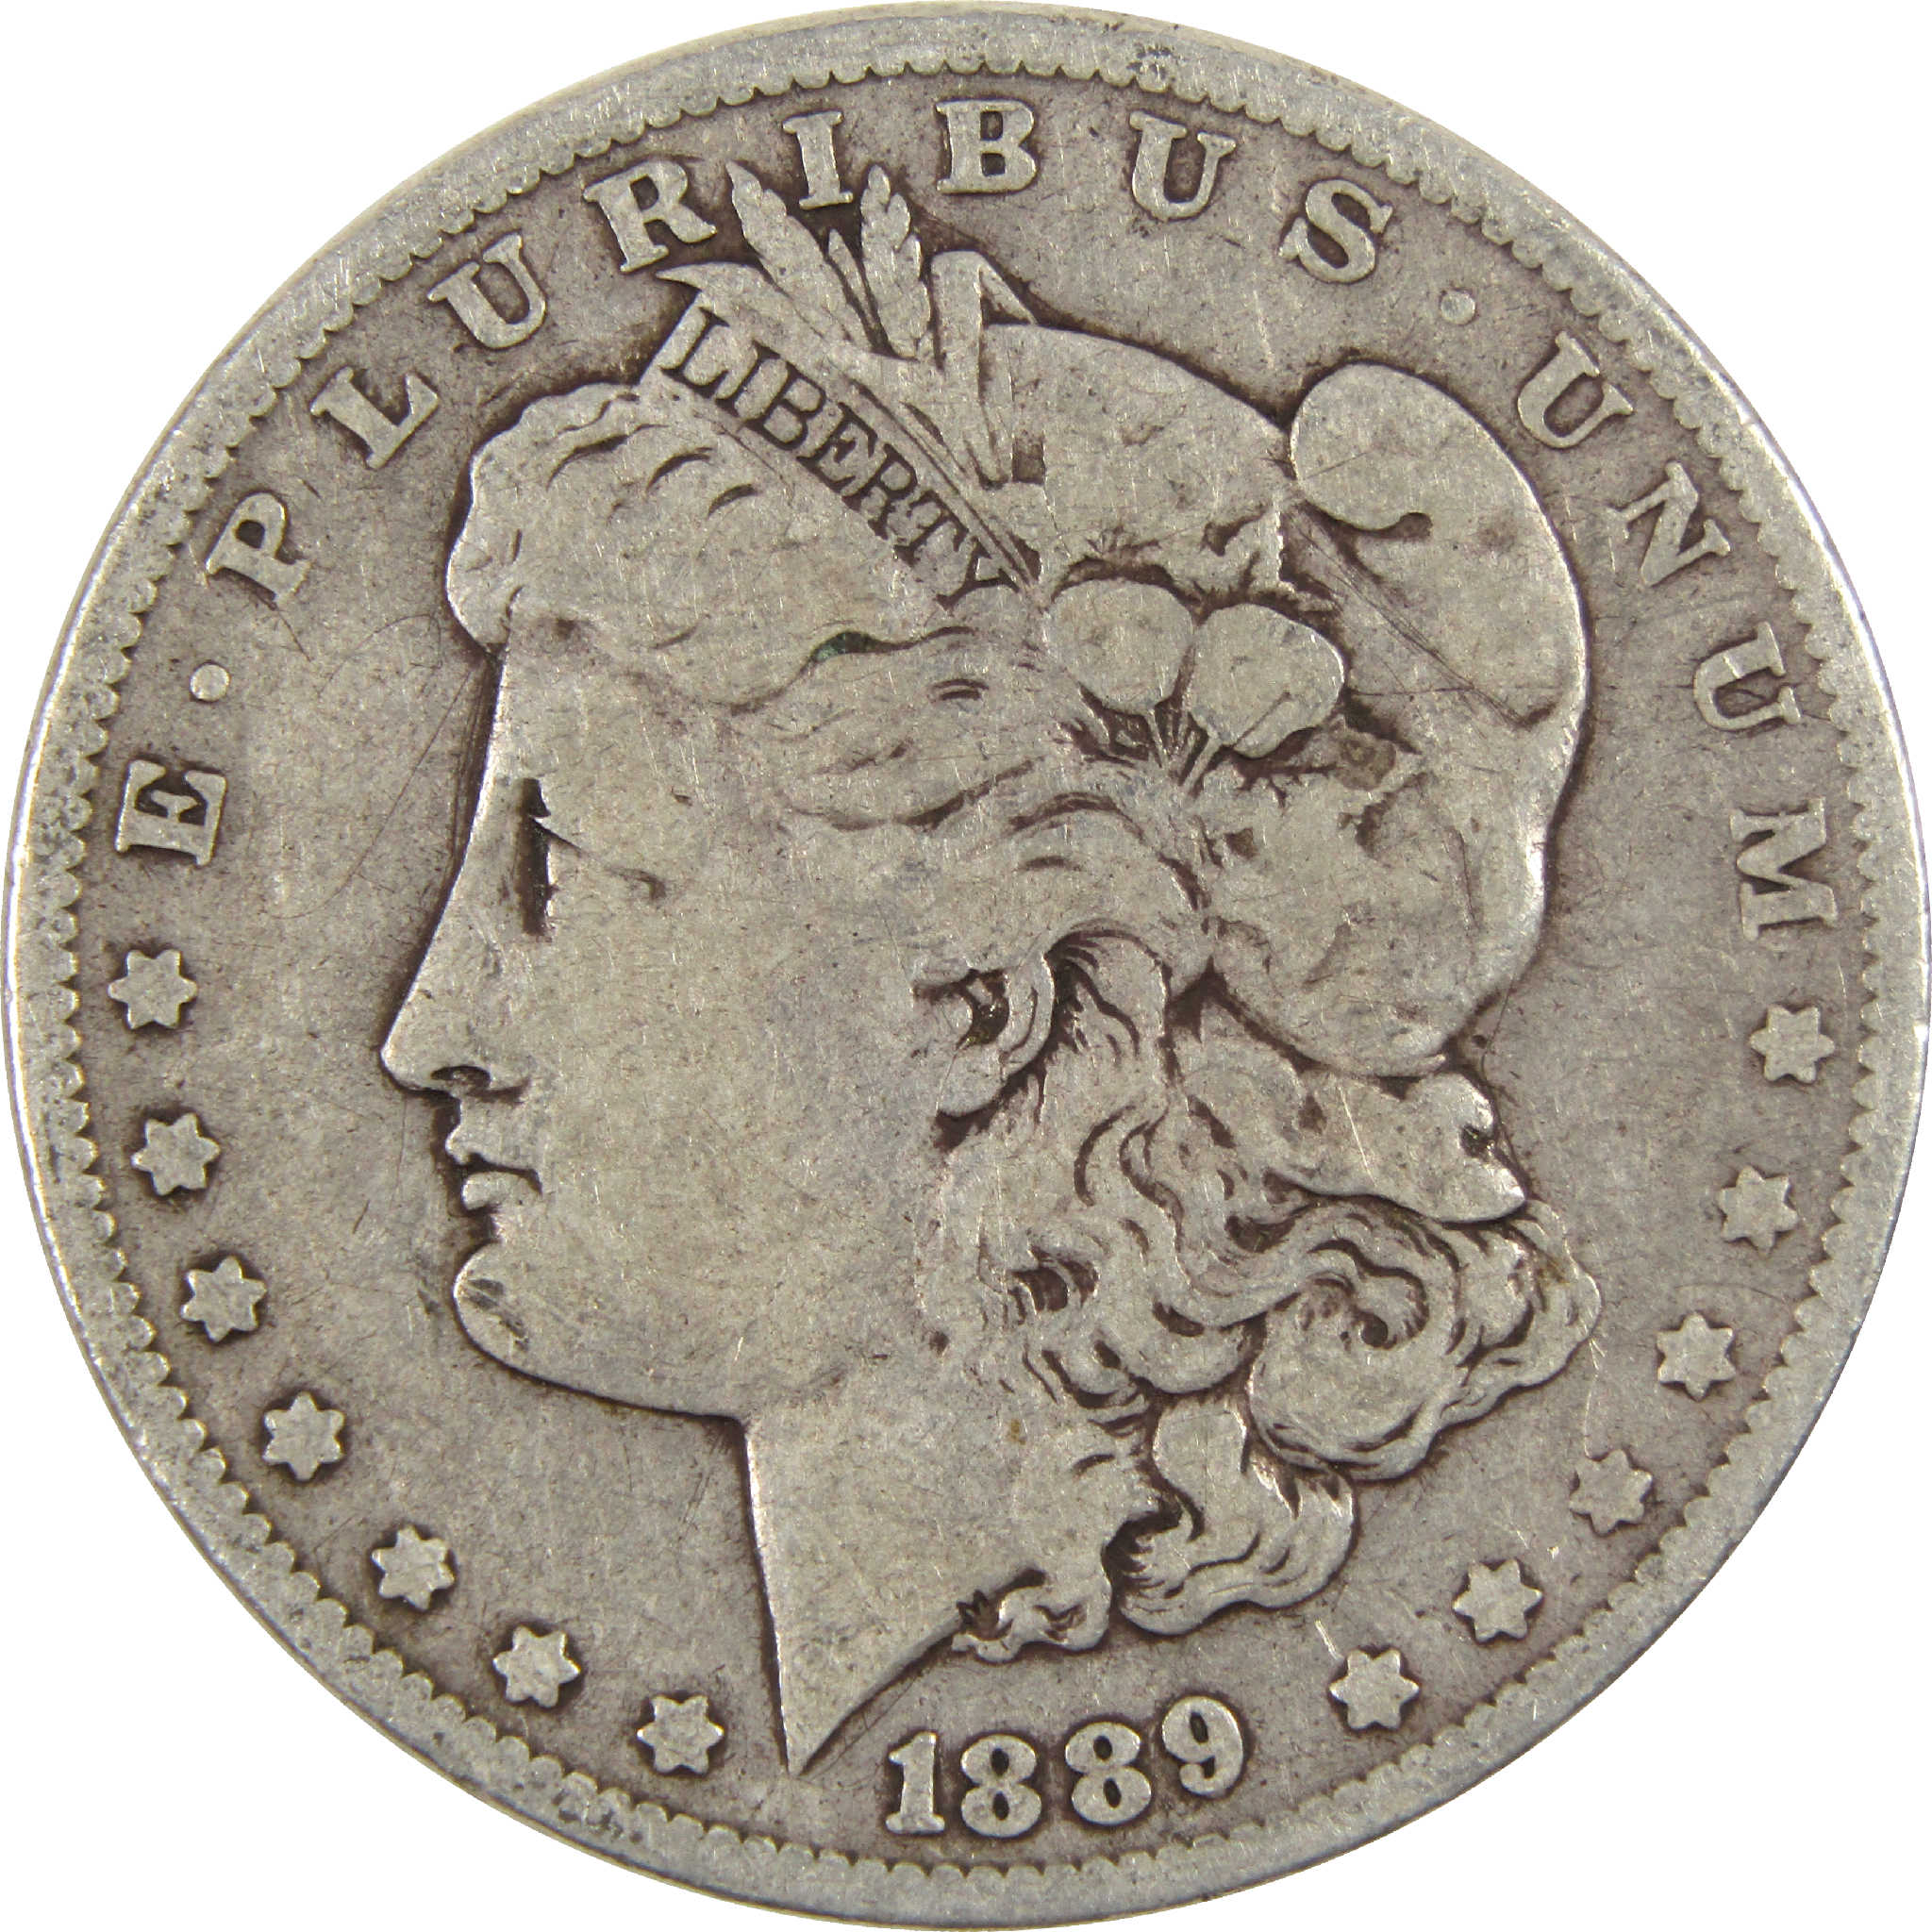 1889 Morgan Dollar VG Very Good Silver $1 Coin - Morgan coin - Morgan silver dollar - Morgan silver dollar for sale - Profile Coins &amp; Collectibles